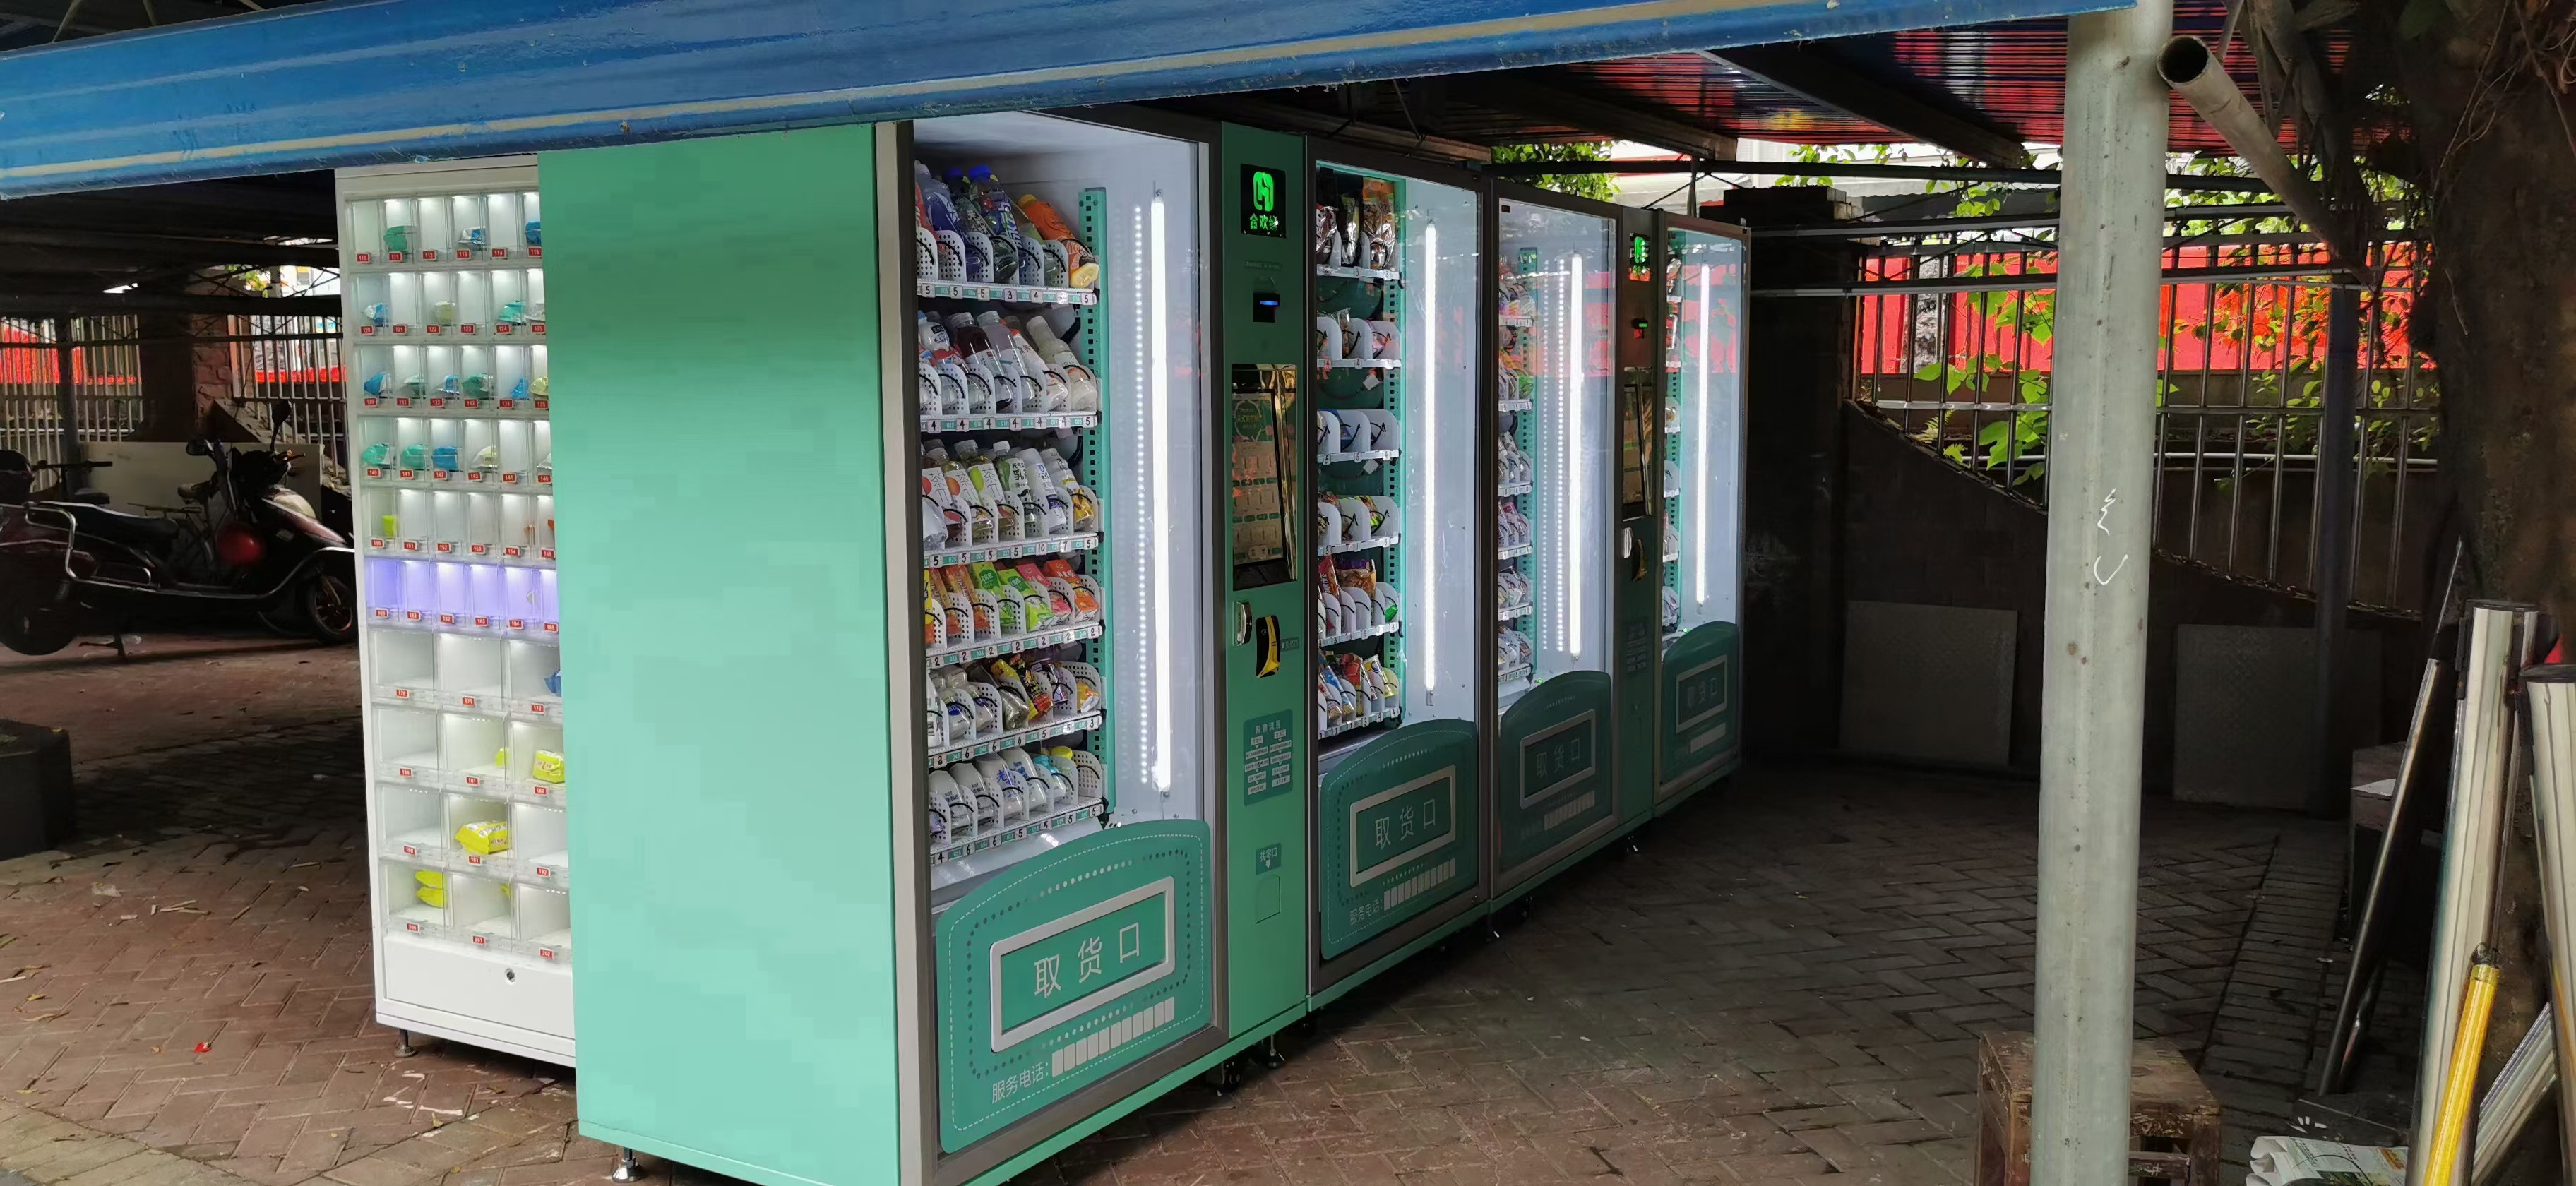 大学校园里的自动售货机, 究竟有没有赚头?